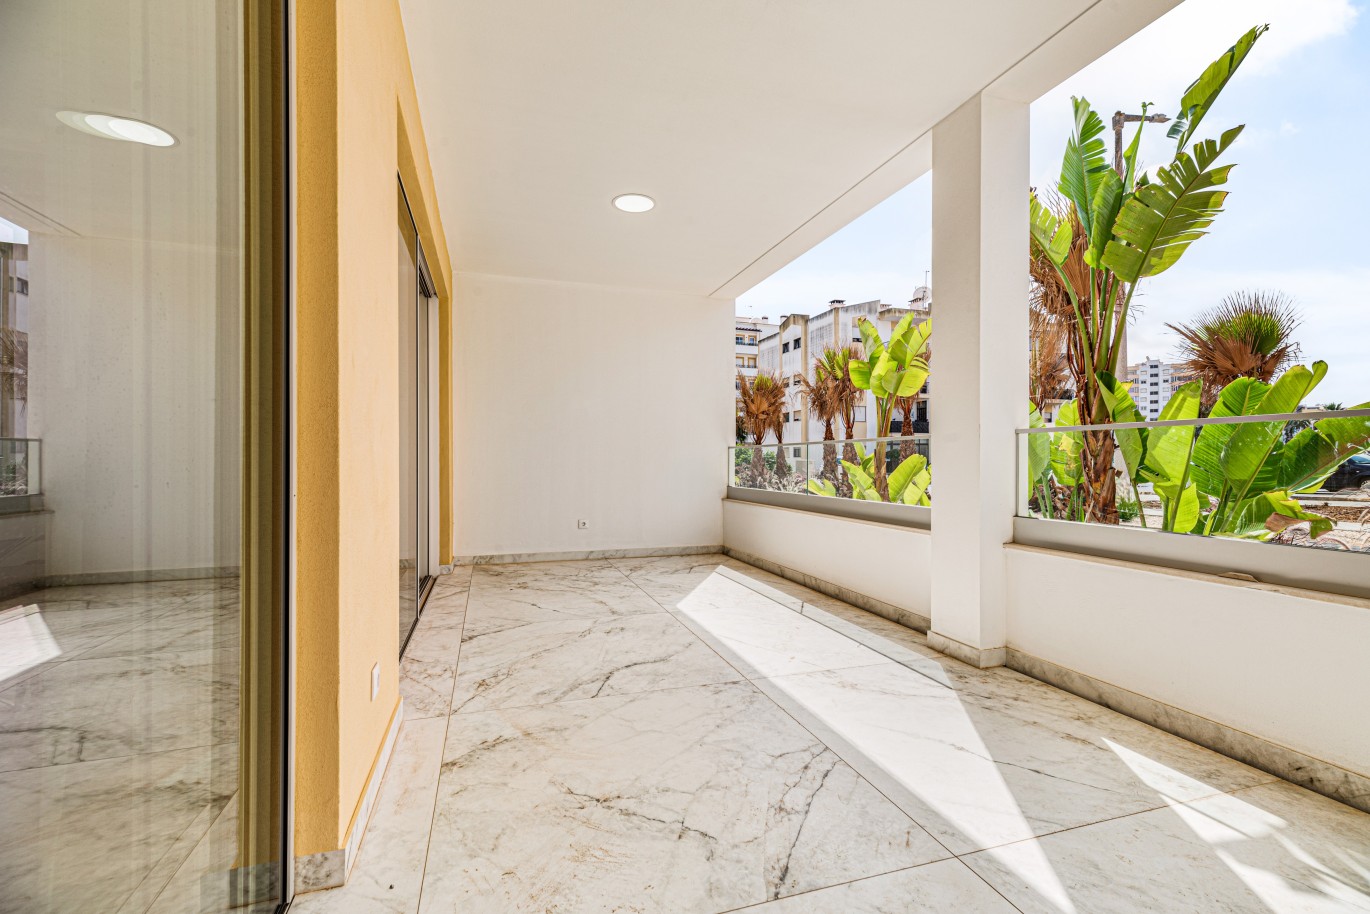 Apartamento, com terraço, para venda, em Lagos, Algarve_238235